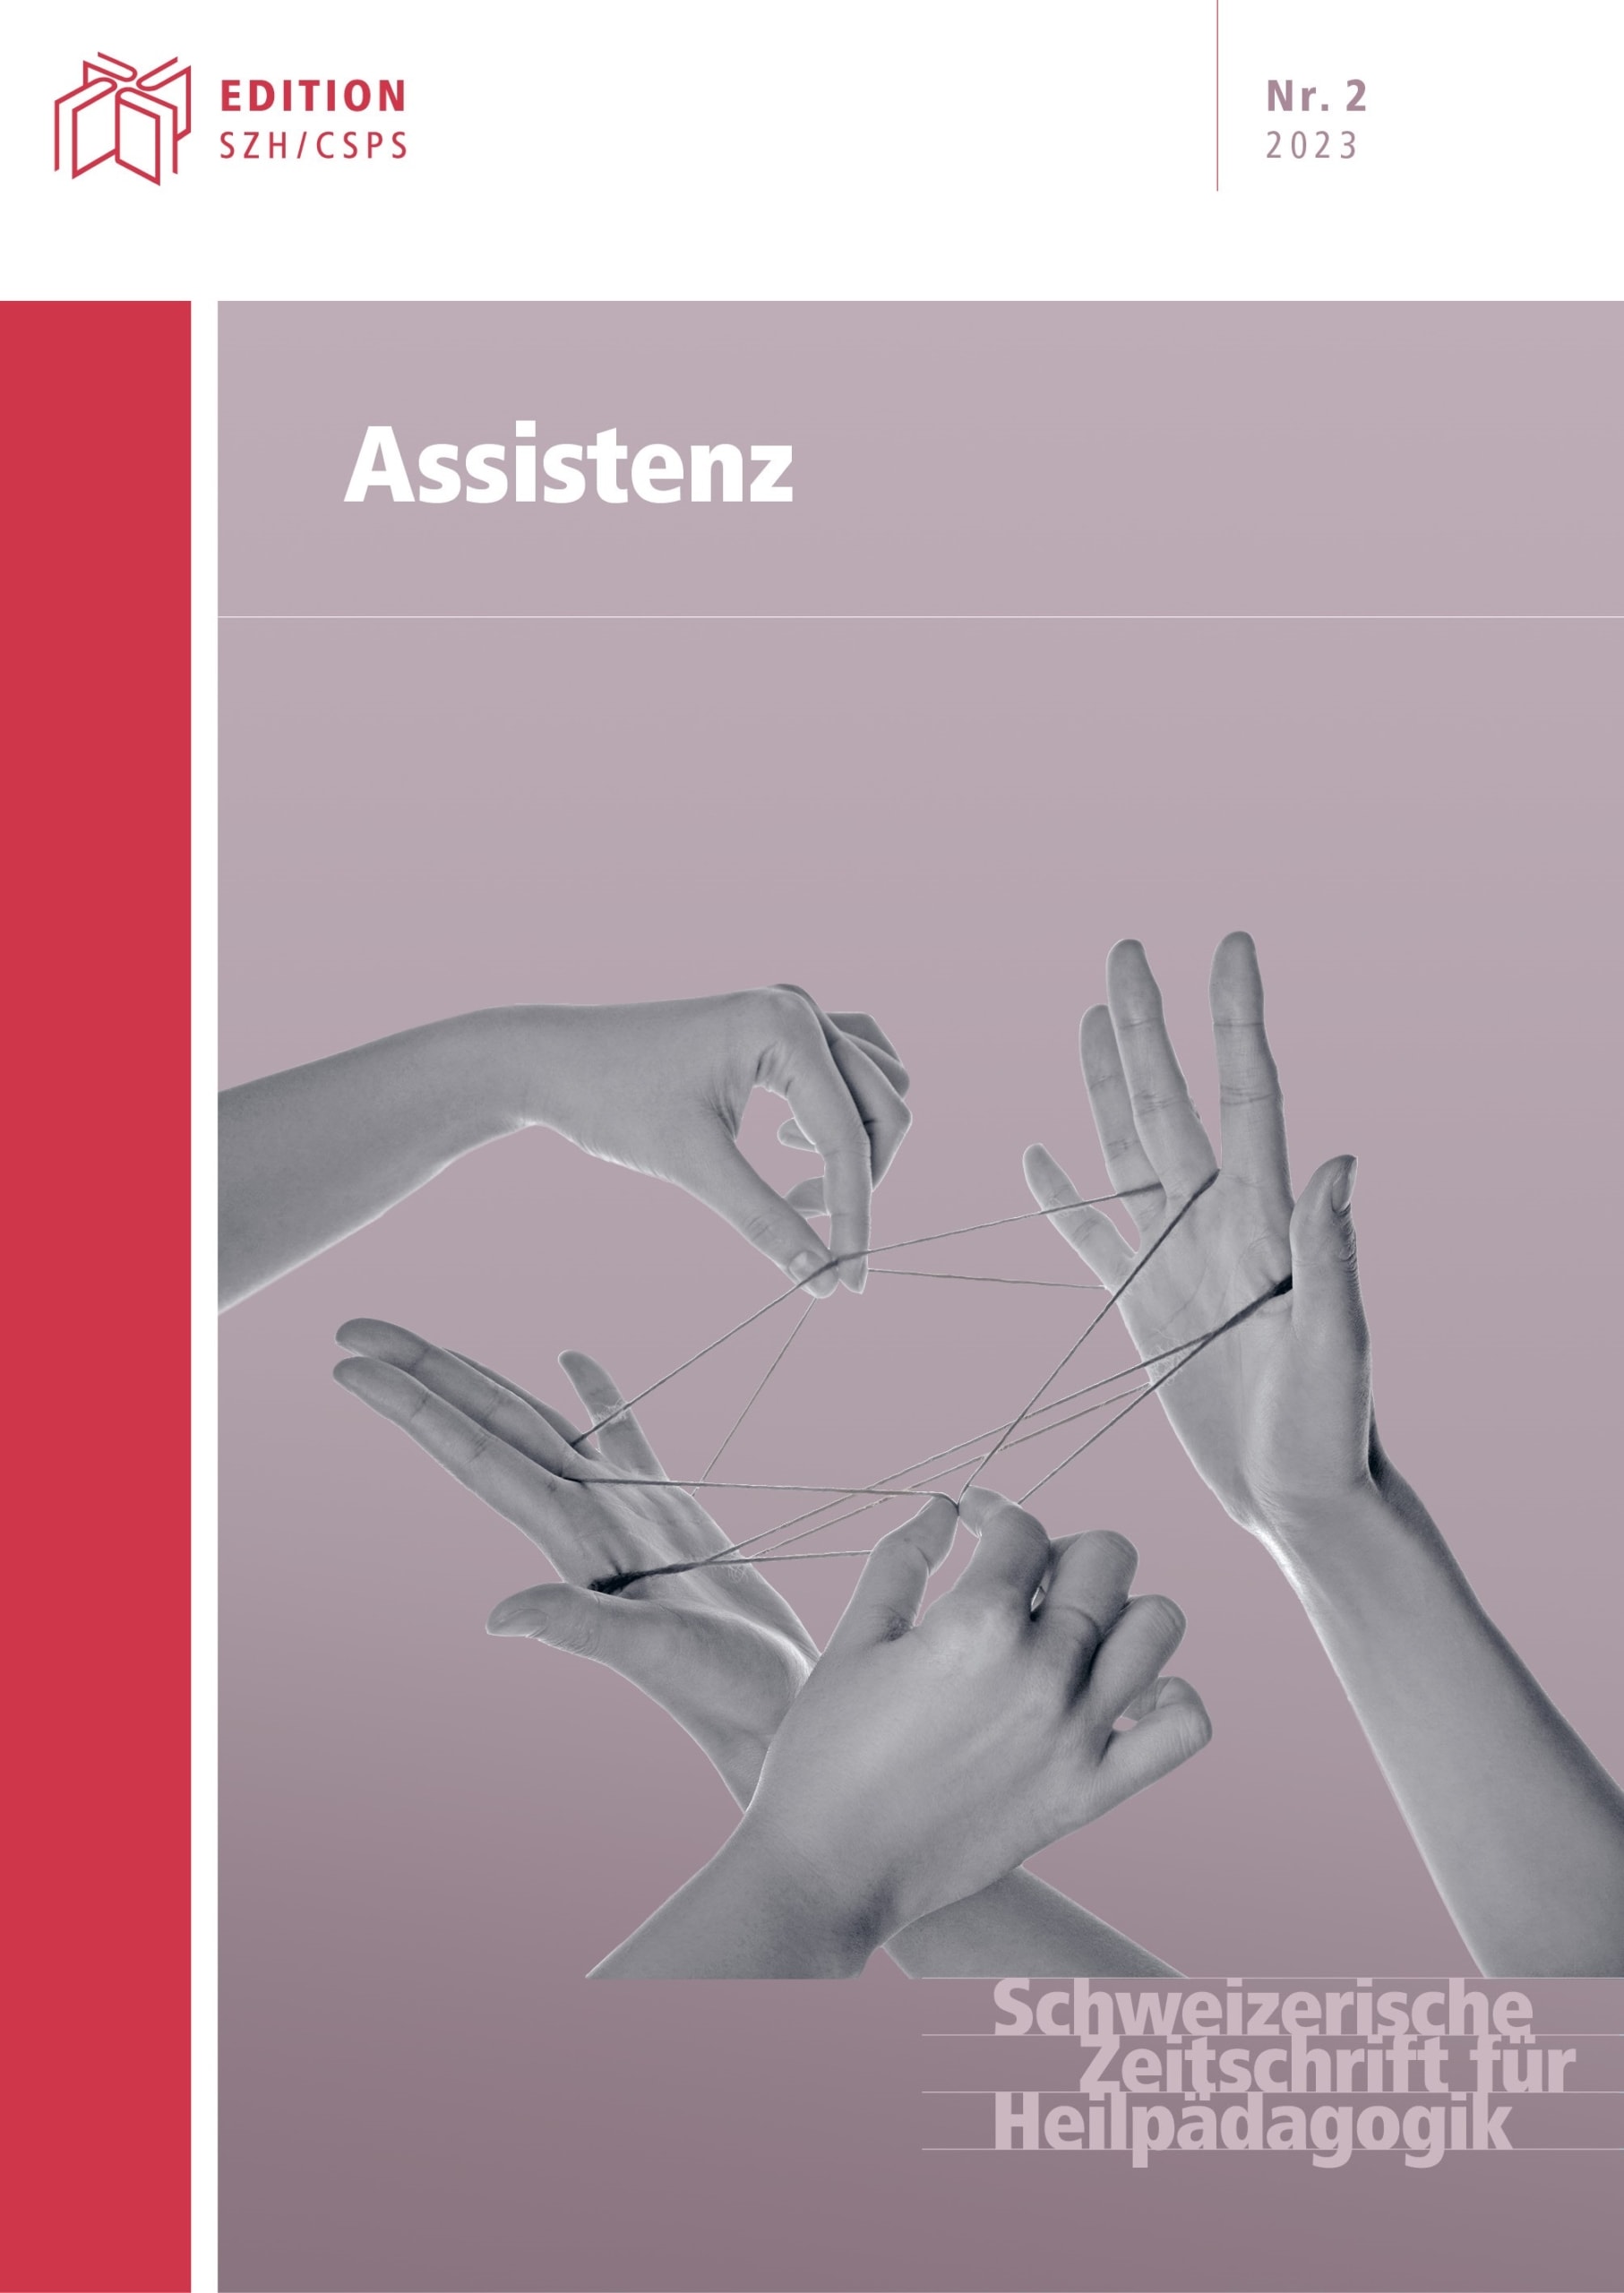 Cover von „Assistenz“, Ausgabe Nr. 2 der Schweizerischen Zeitschrift für Sonderpädagogik, zeigt Hände bei einem Fadenspiel, mit Texttiteln in Deutsch.